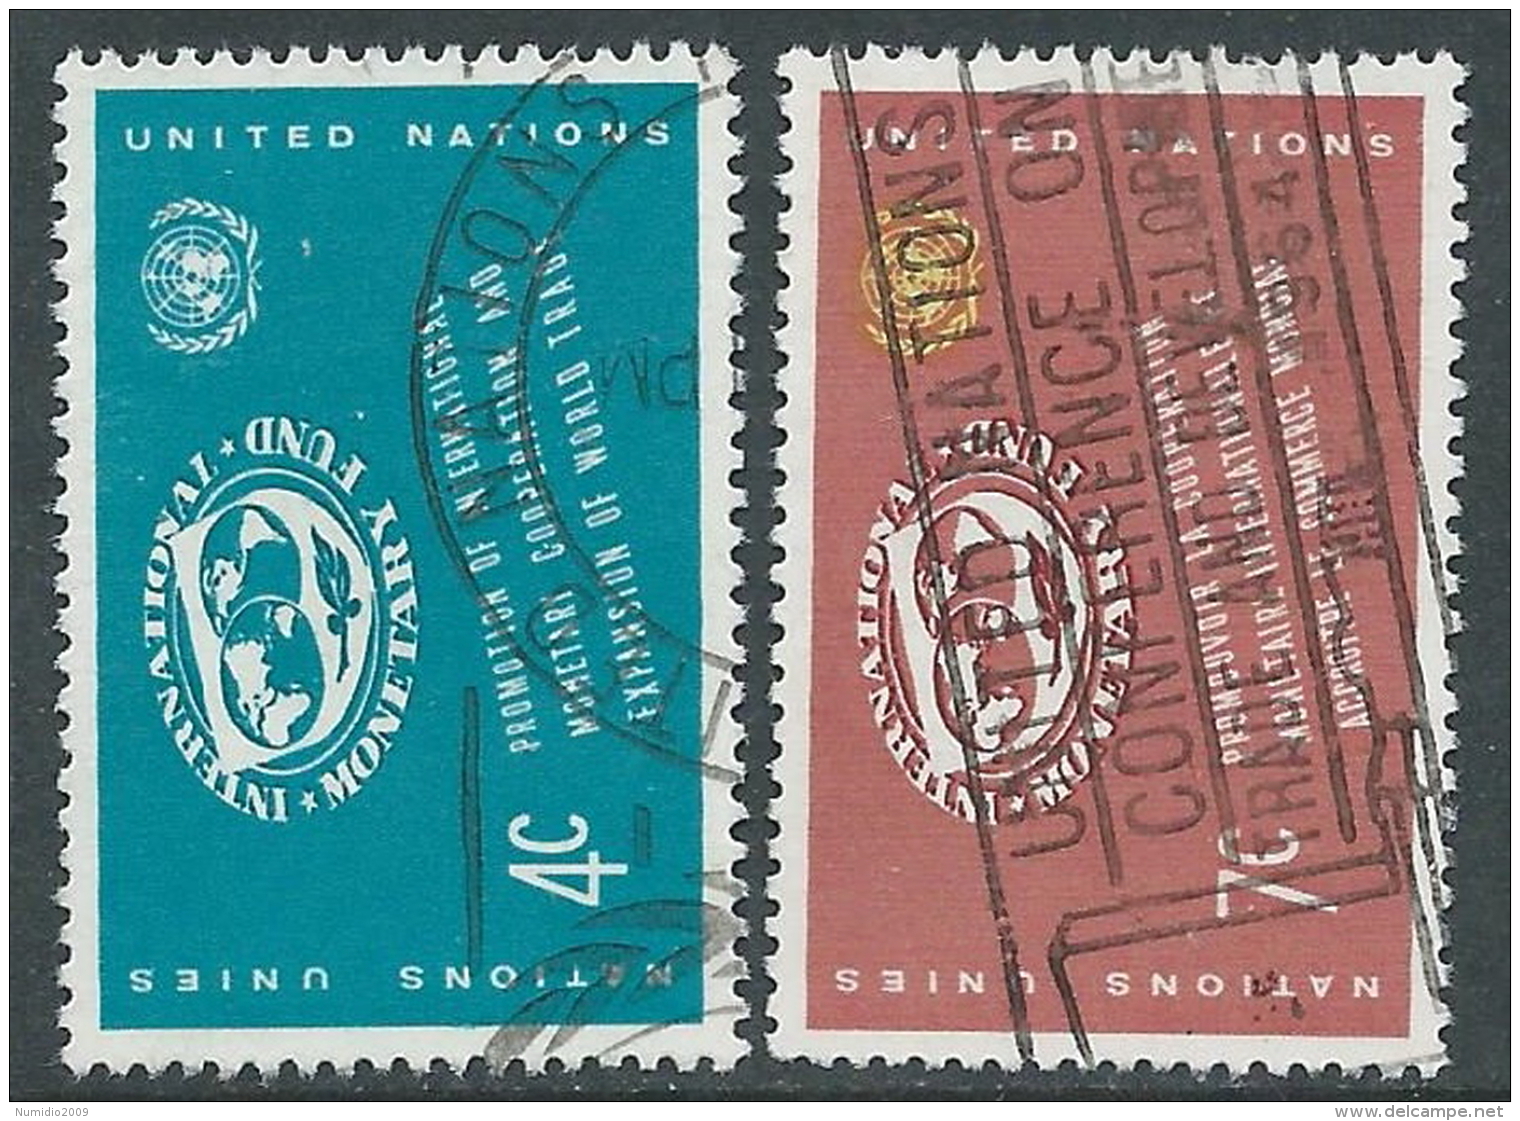 1961 NAZIONI UNITE NEW YORK USATO FONDO MONETARIO - Z18-6 - Used Stamps